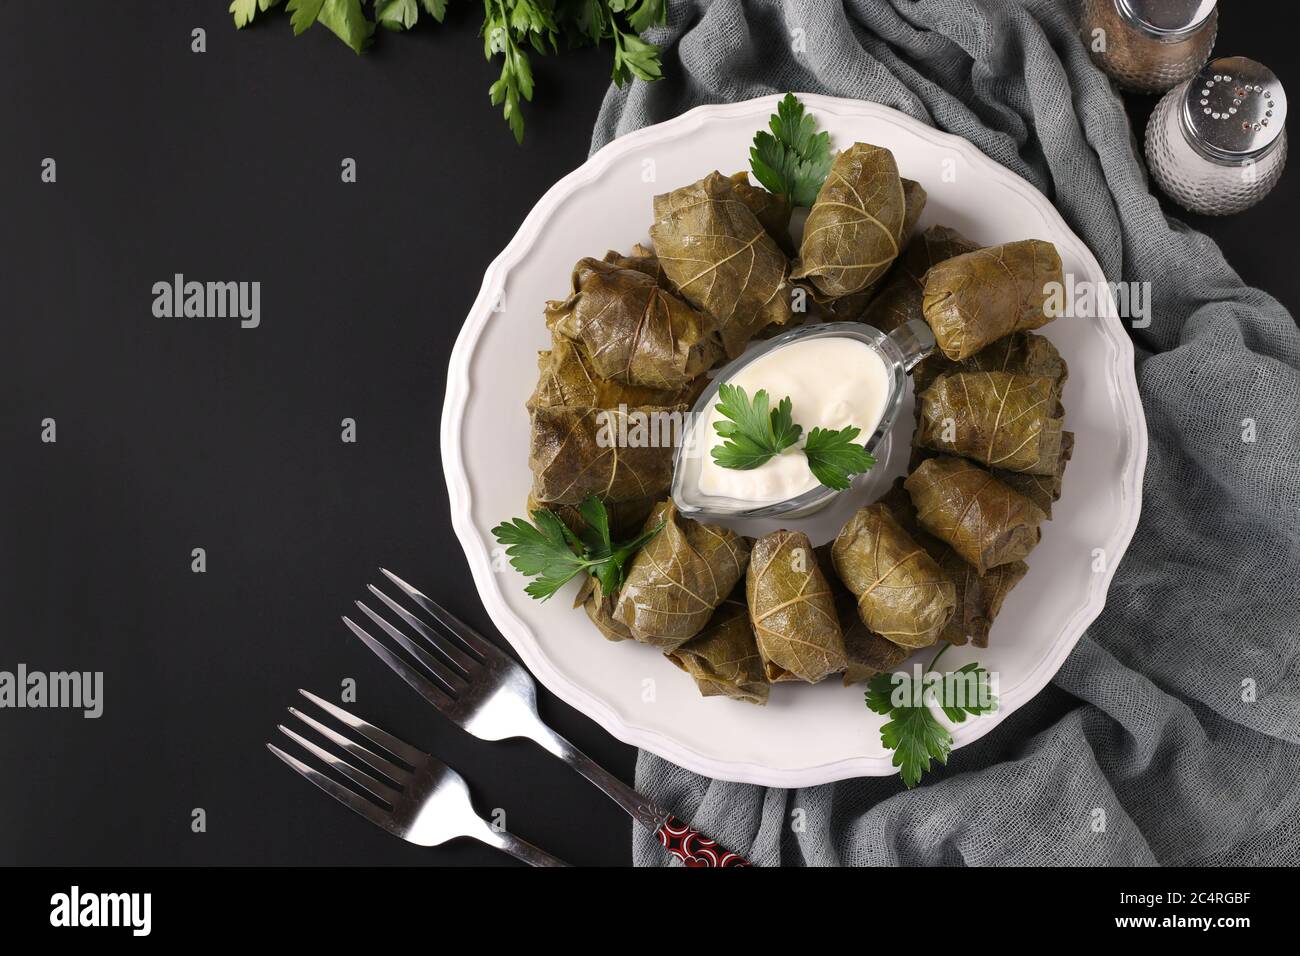 Dolma - foglie di uva ripieni con riso e carne su piatto bianco su fondo nero. Cucina tradizionale caucasica, greca, ottomana e turca Foto Stock